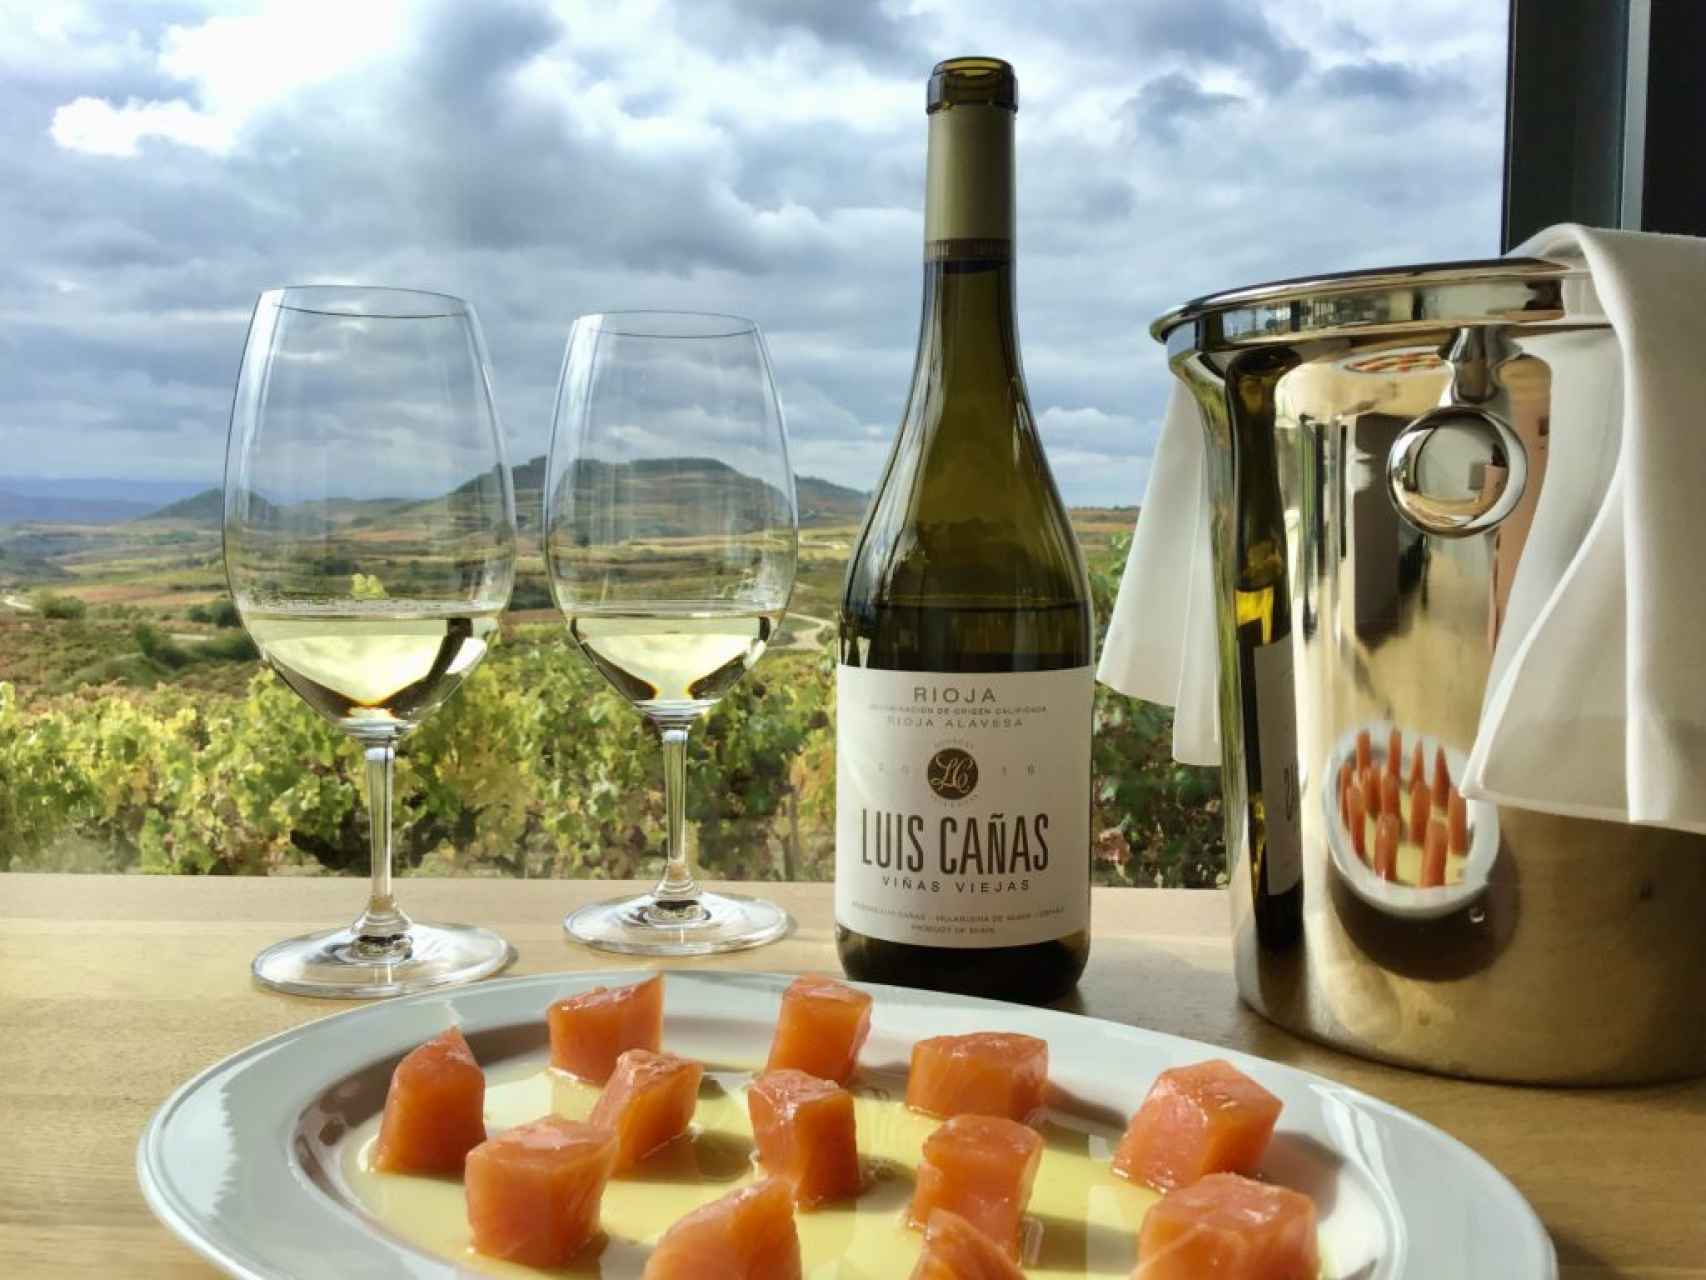 Luis Cañas elabora uno de los grandes vinos blancos de Rioja.